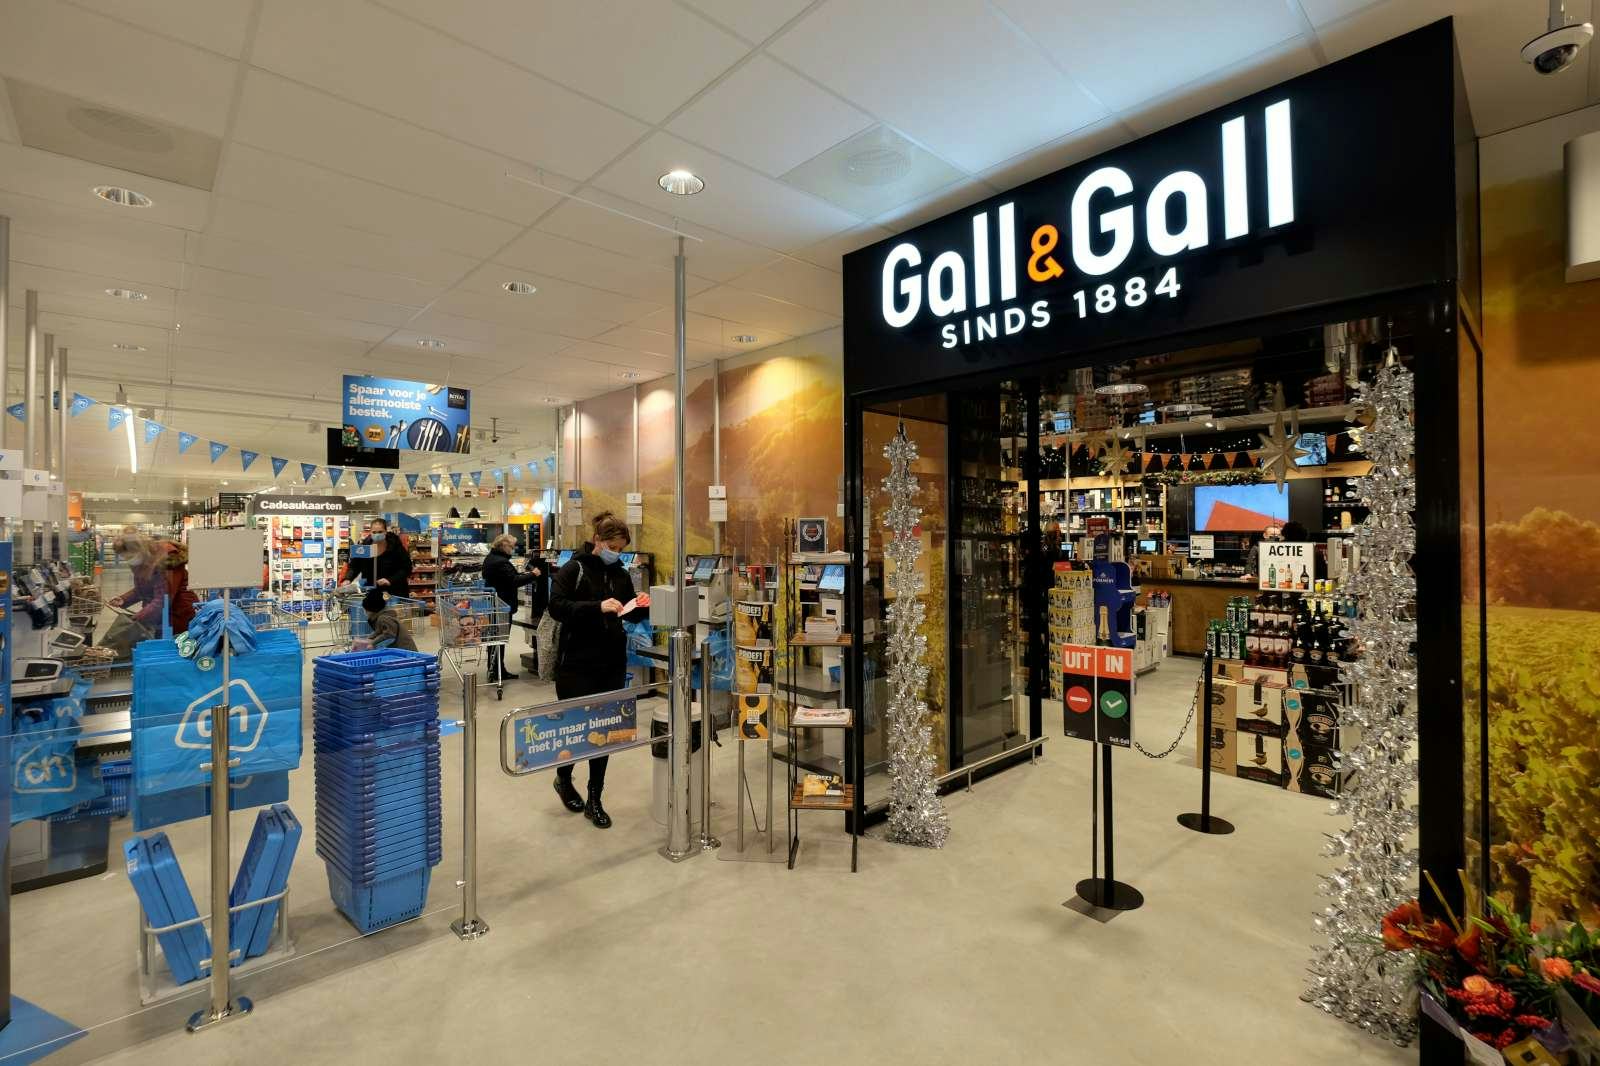 Medewerkers Gall & Gall willen nieuwe inflatiebestendige cao